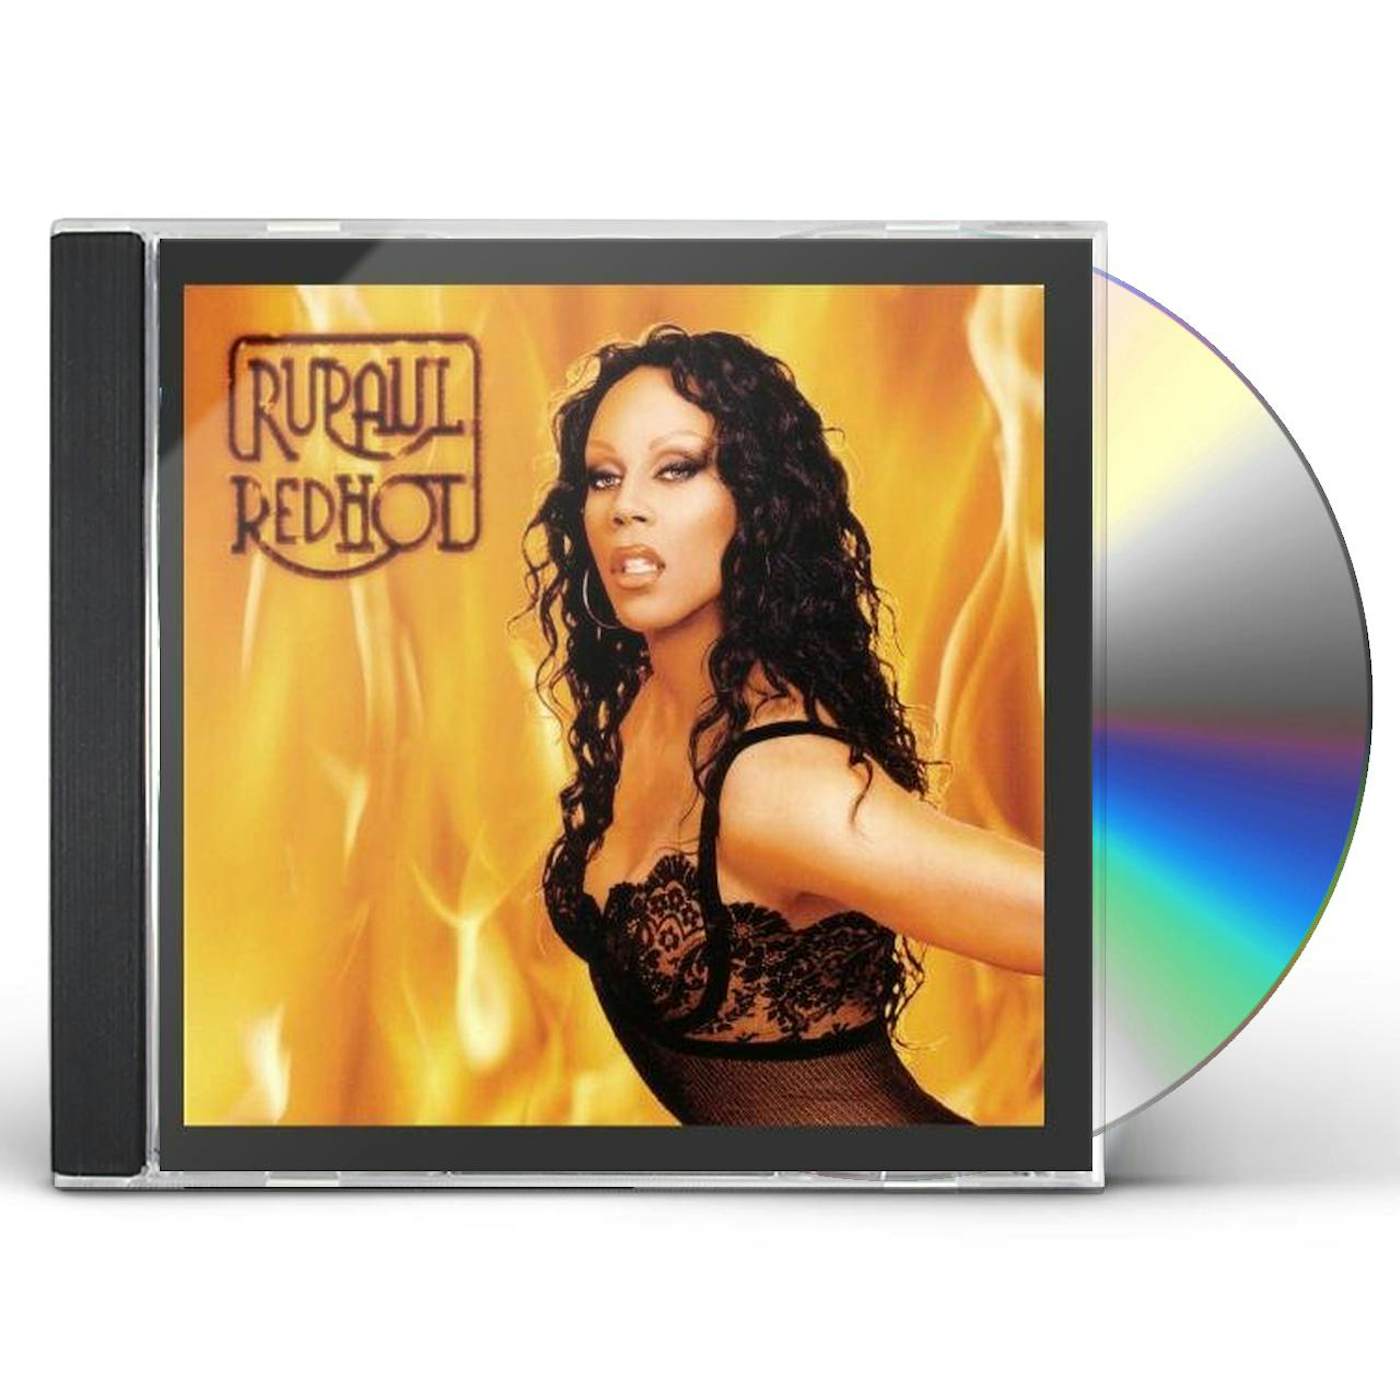 Rupaul Red Hot CD